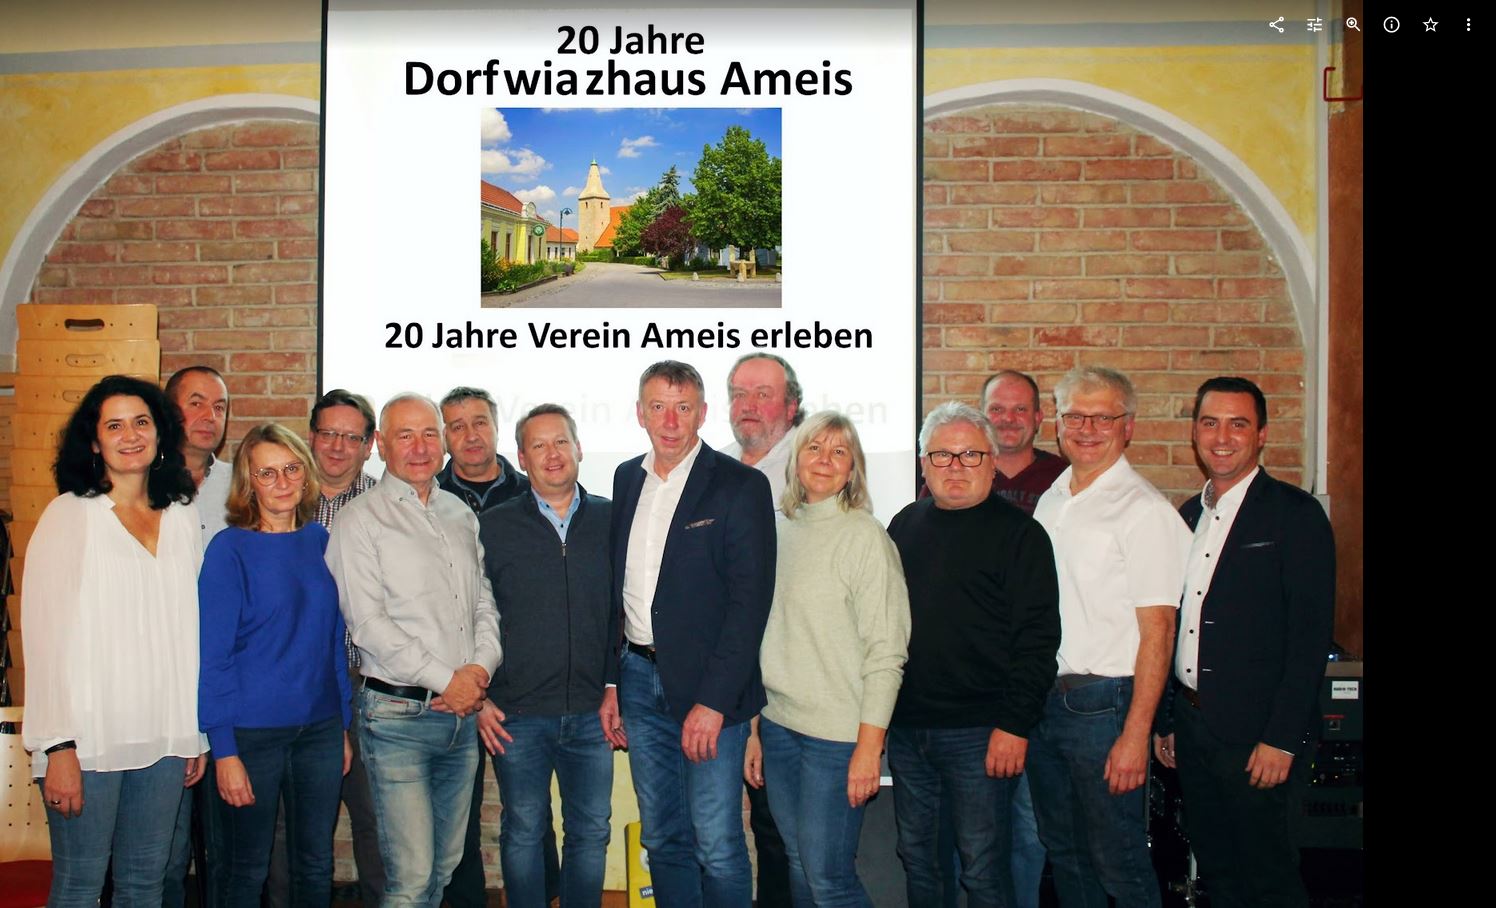 20 Jahre Dorfwiazhaus, 20 Jahre Verein Ameis erleben